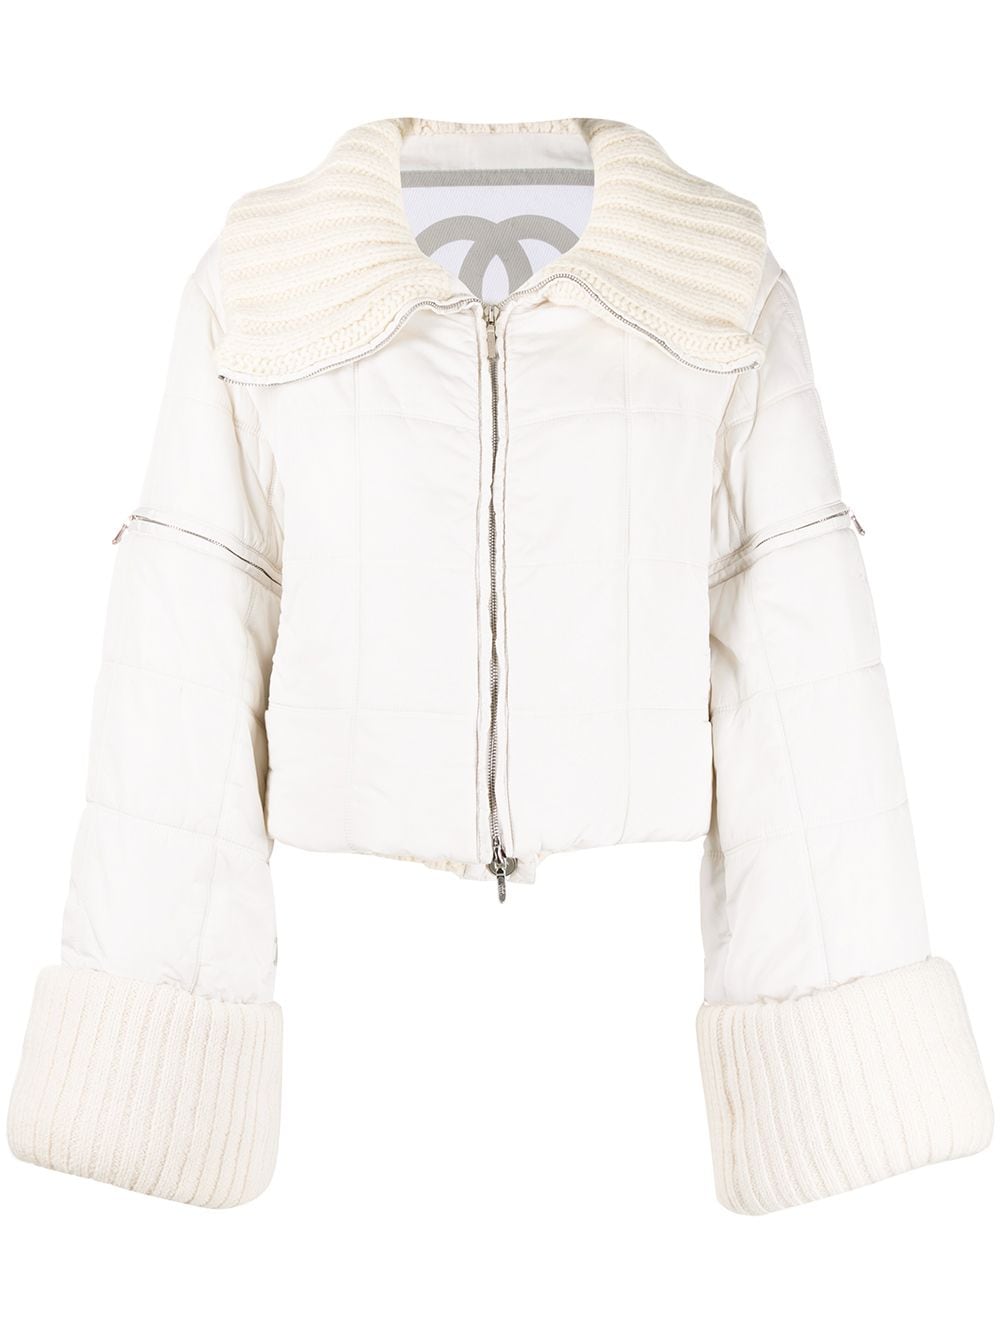 Chanel Sport Hooded Windbreaker Jacket